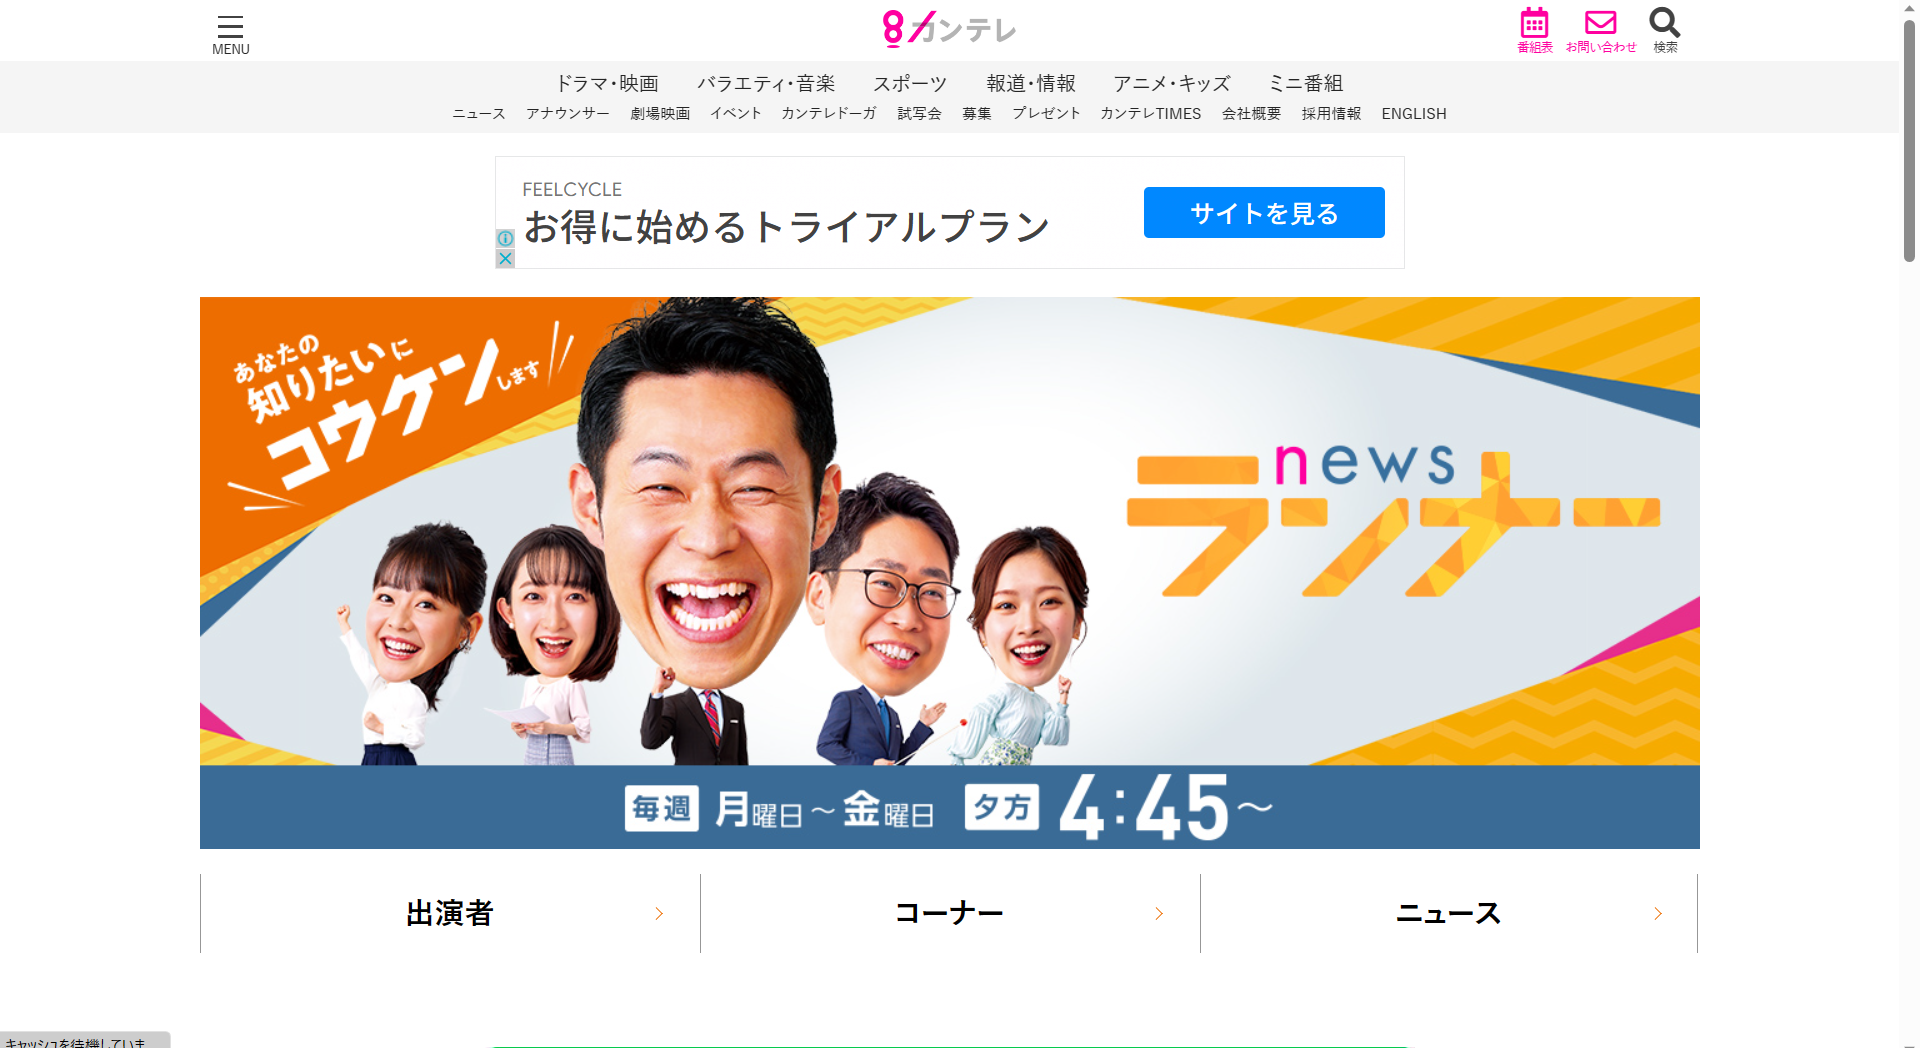 関西テレビの情報ワイド番組「newsランナー」（6/14放送）に代表理事村嵜要が出演「逆パワハラ、上司に熱湯・スタンガンでけが負わせる」